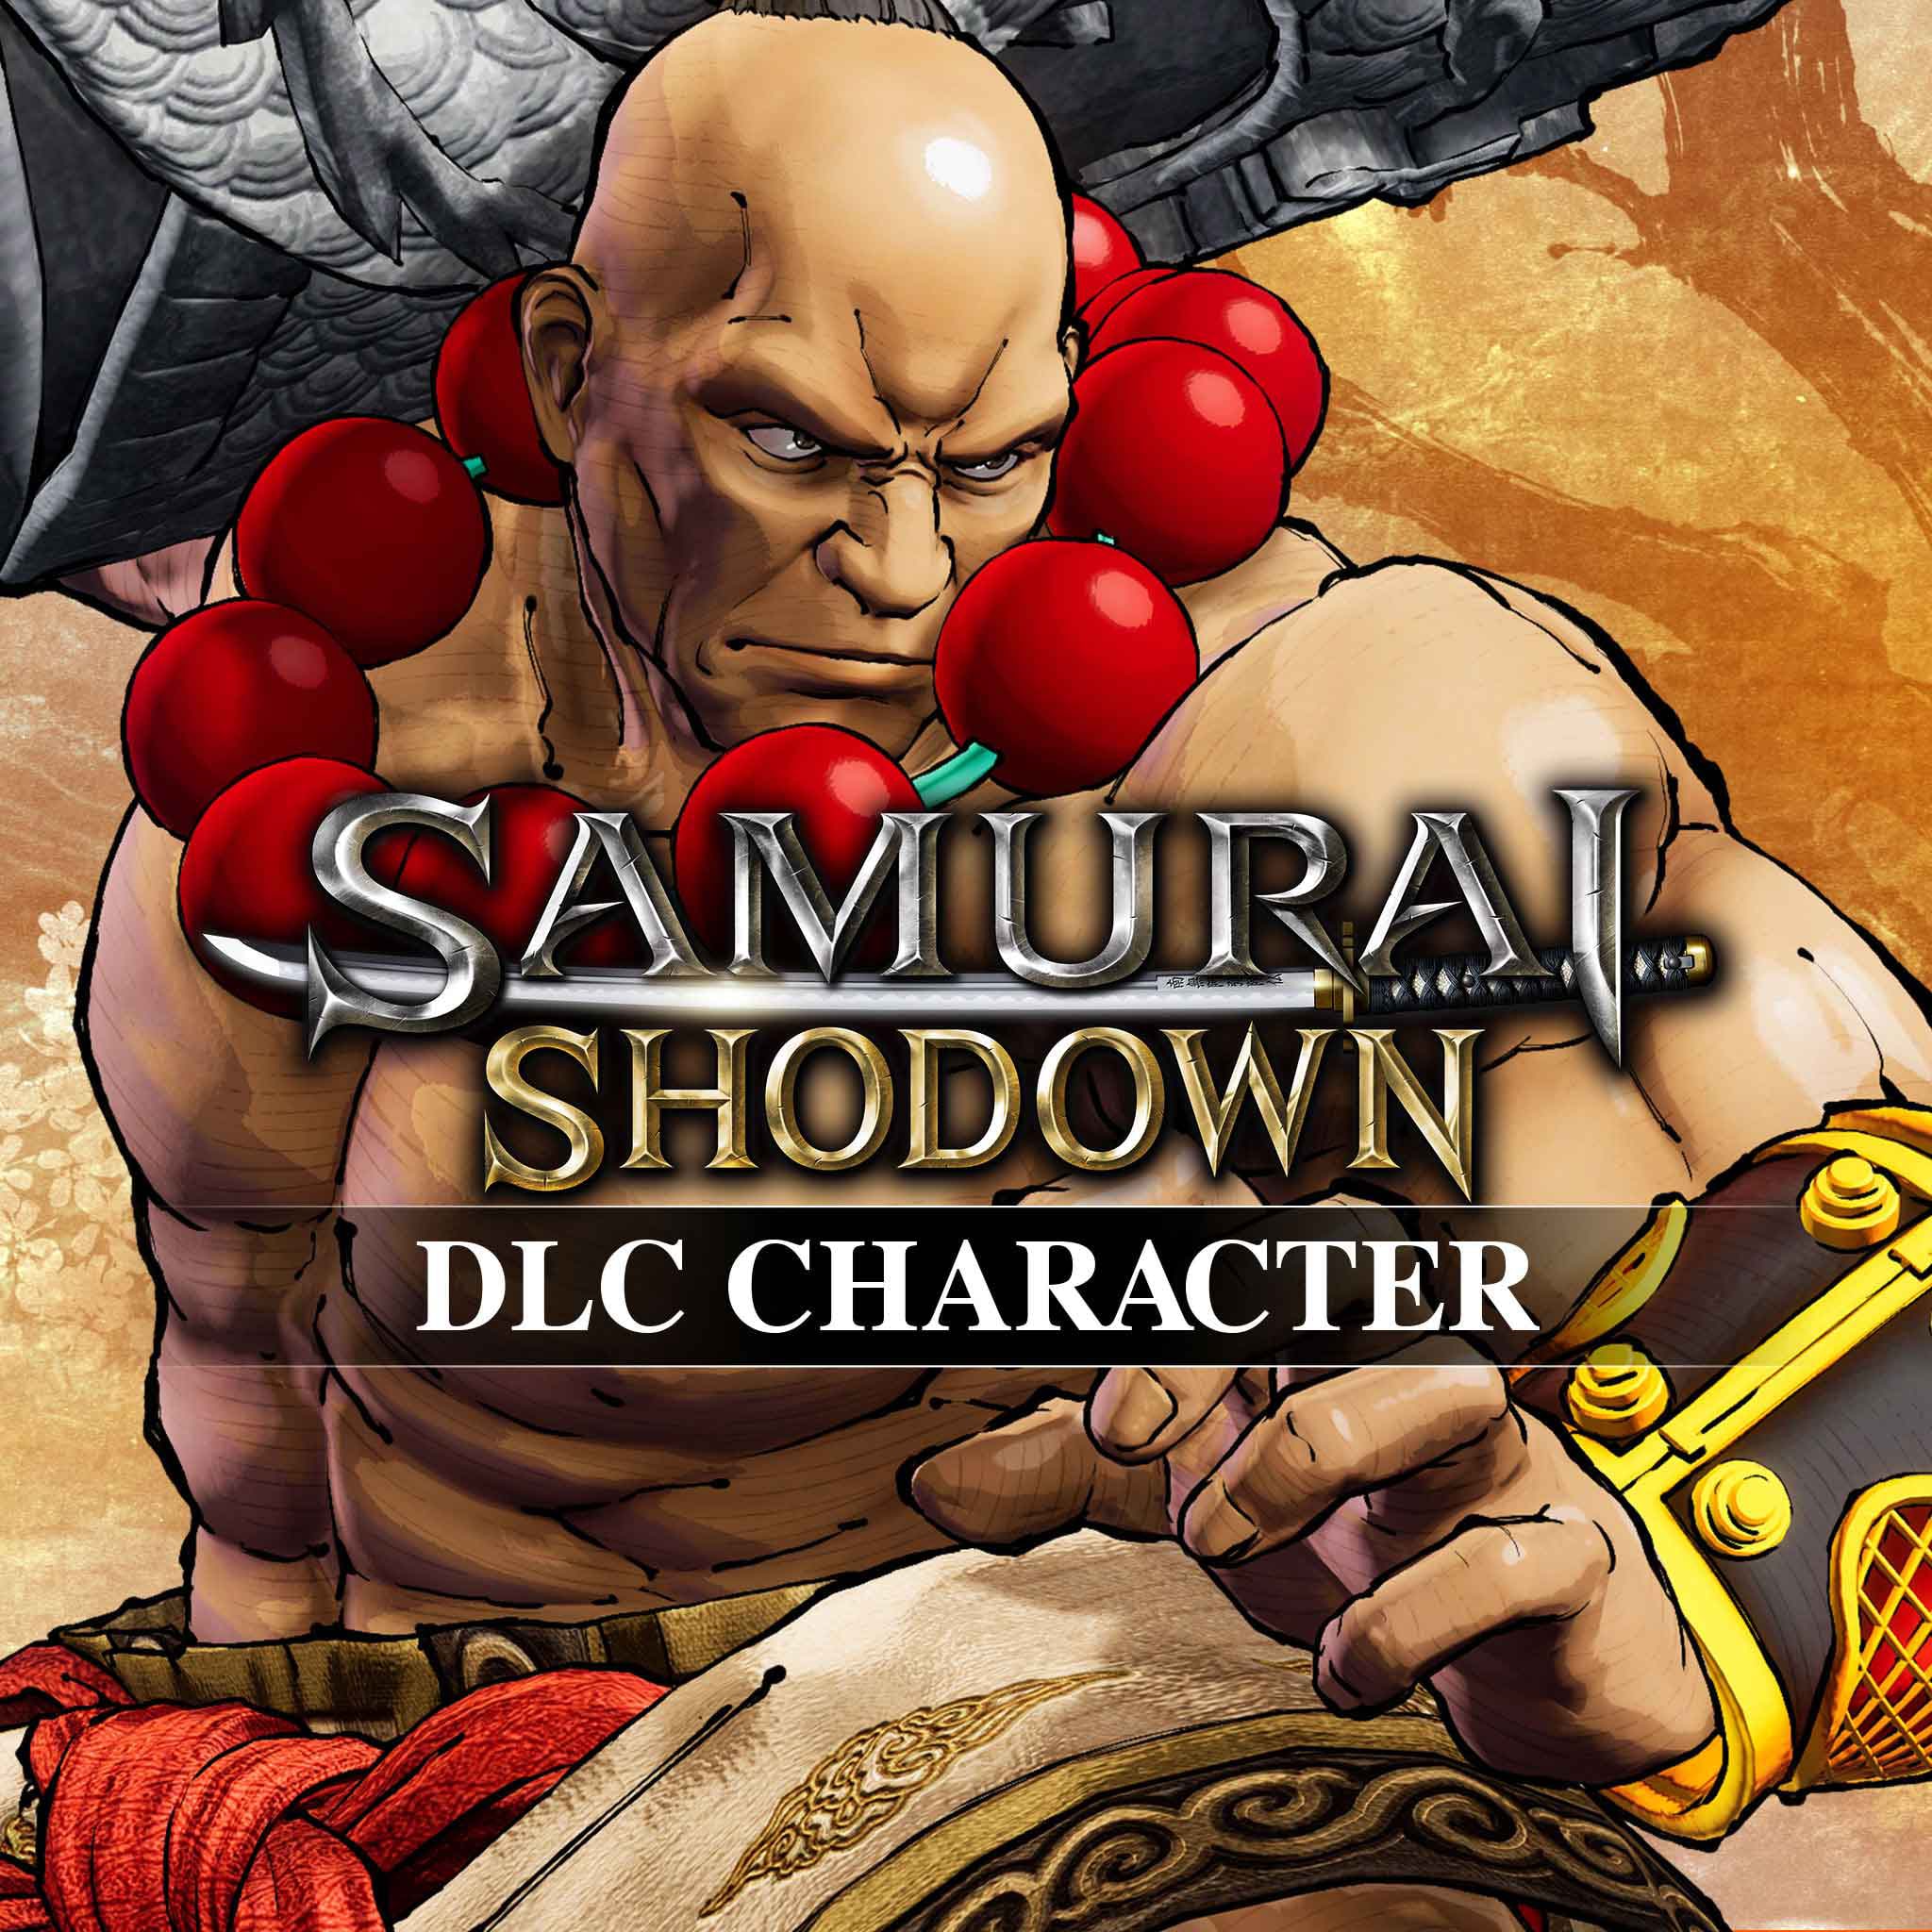 SAMURAI SHODOWN DLC CHARACTER 'WAN-FU'